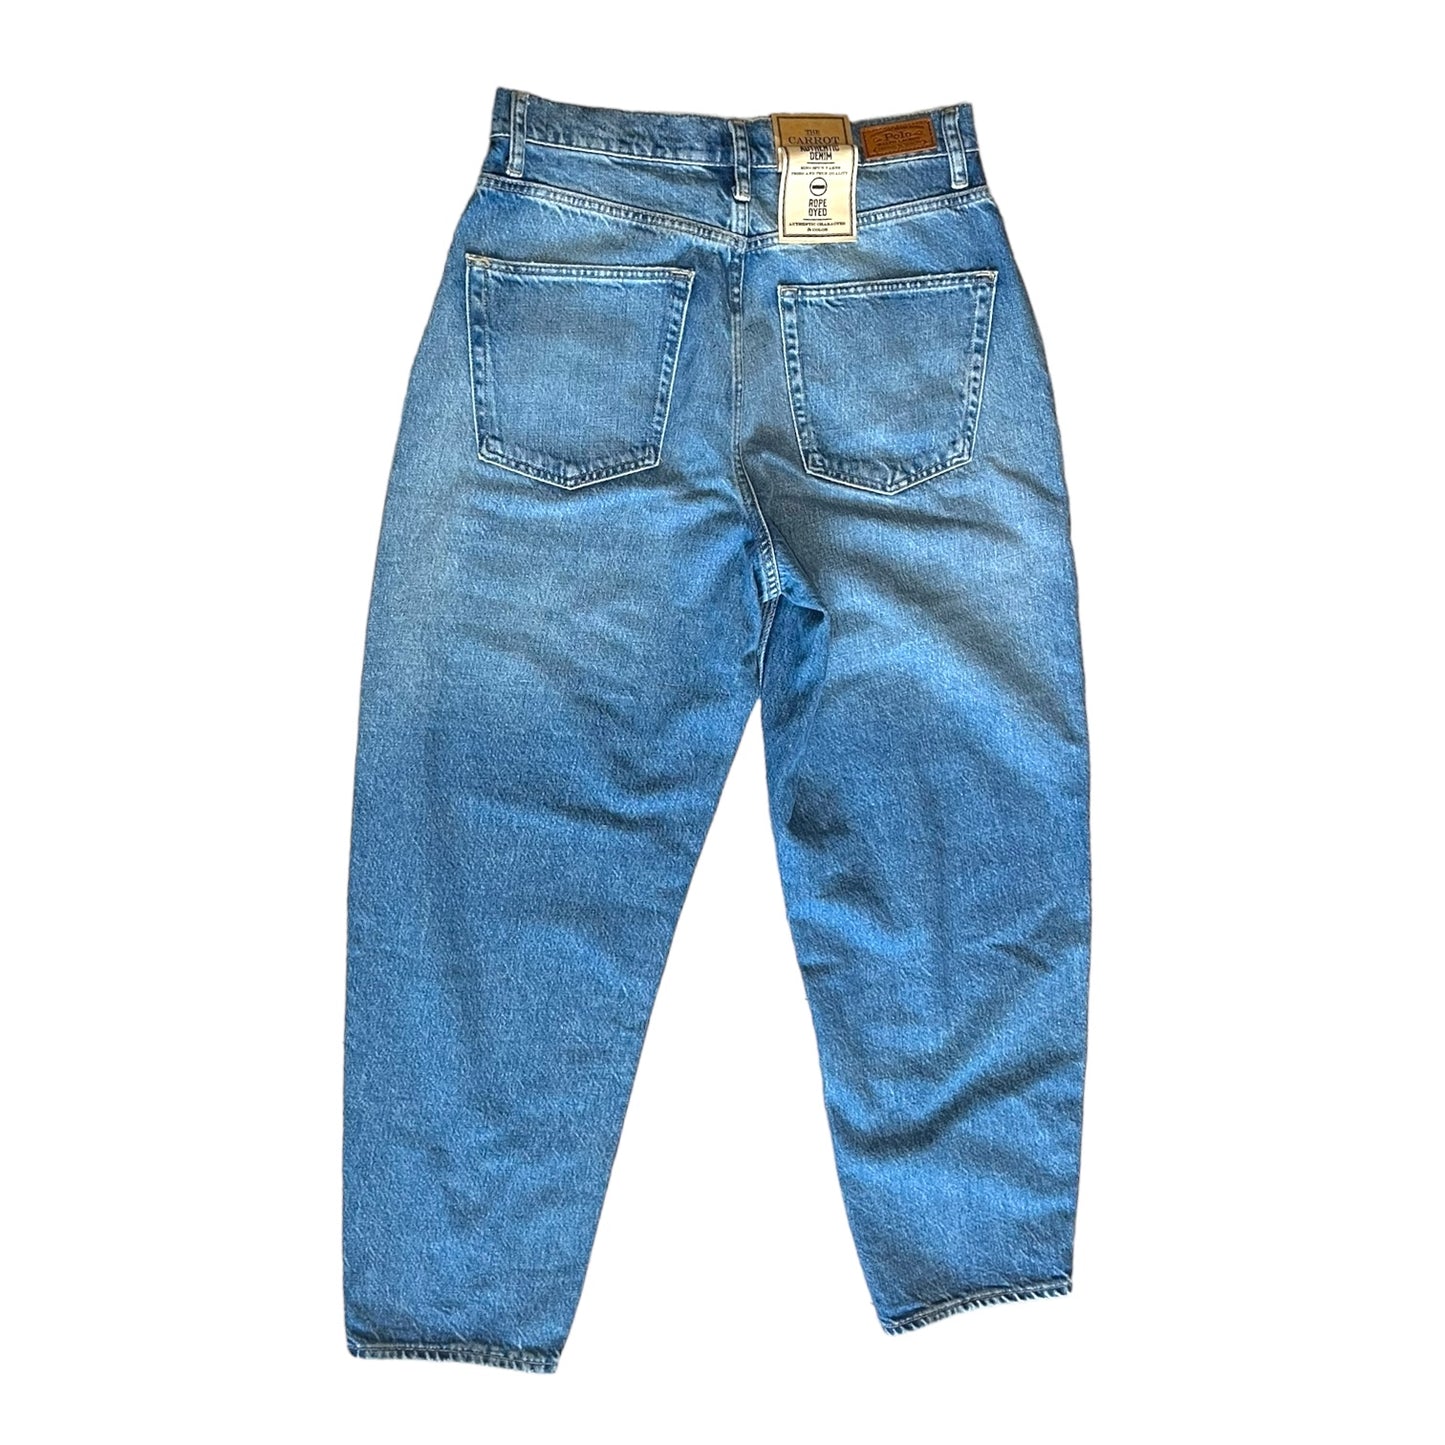 Ralph Lauren Carrot Jeans - 10 - NEW